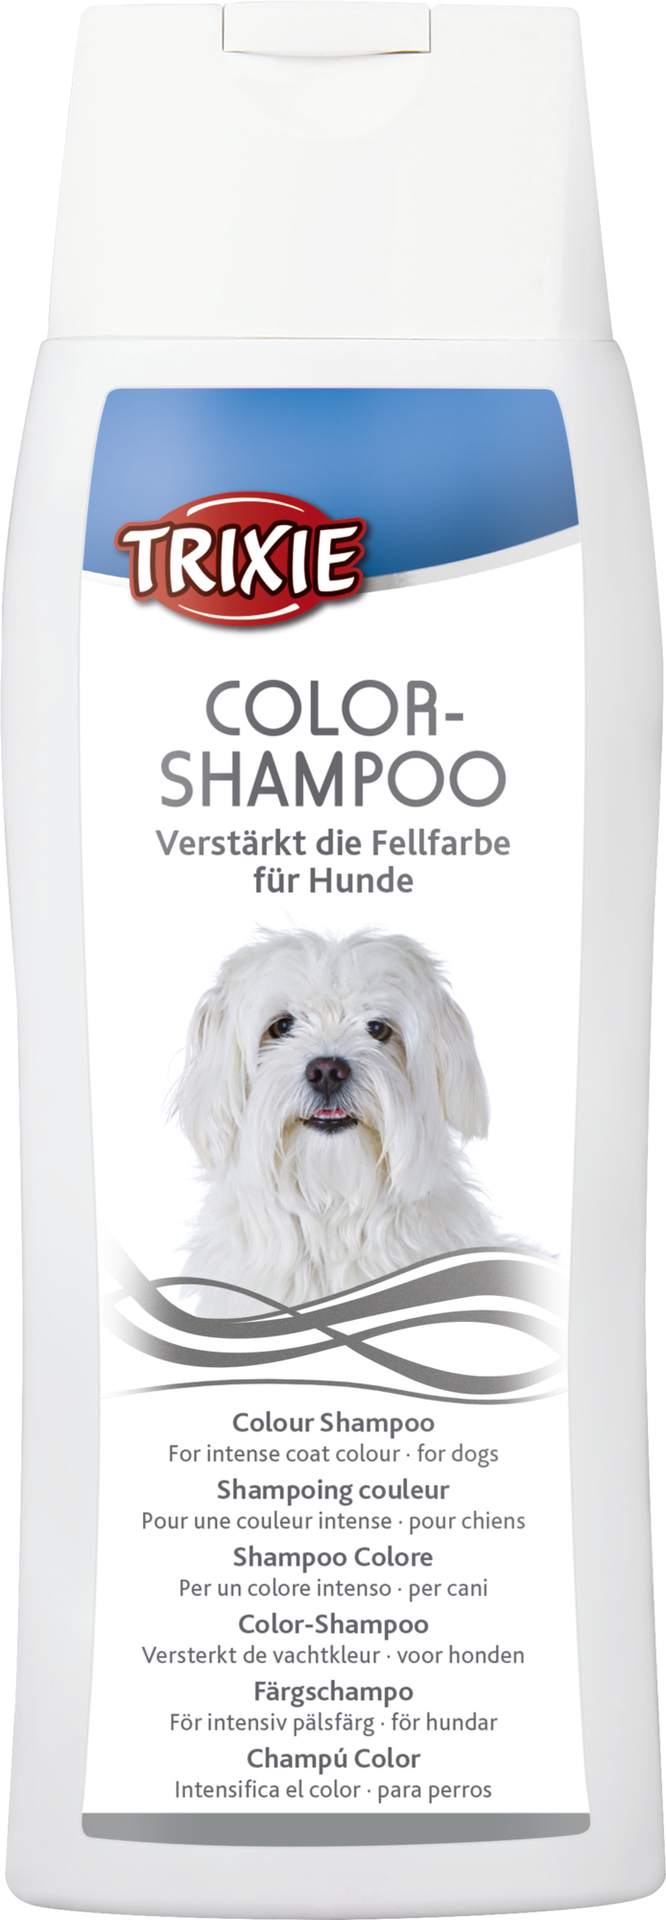 TRIXIE Color-Shampoo